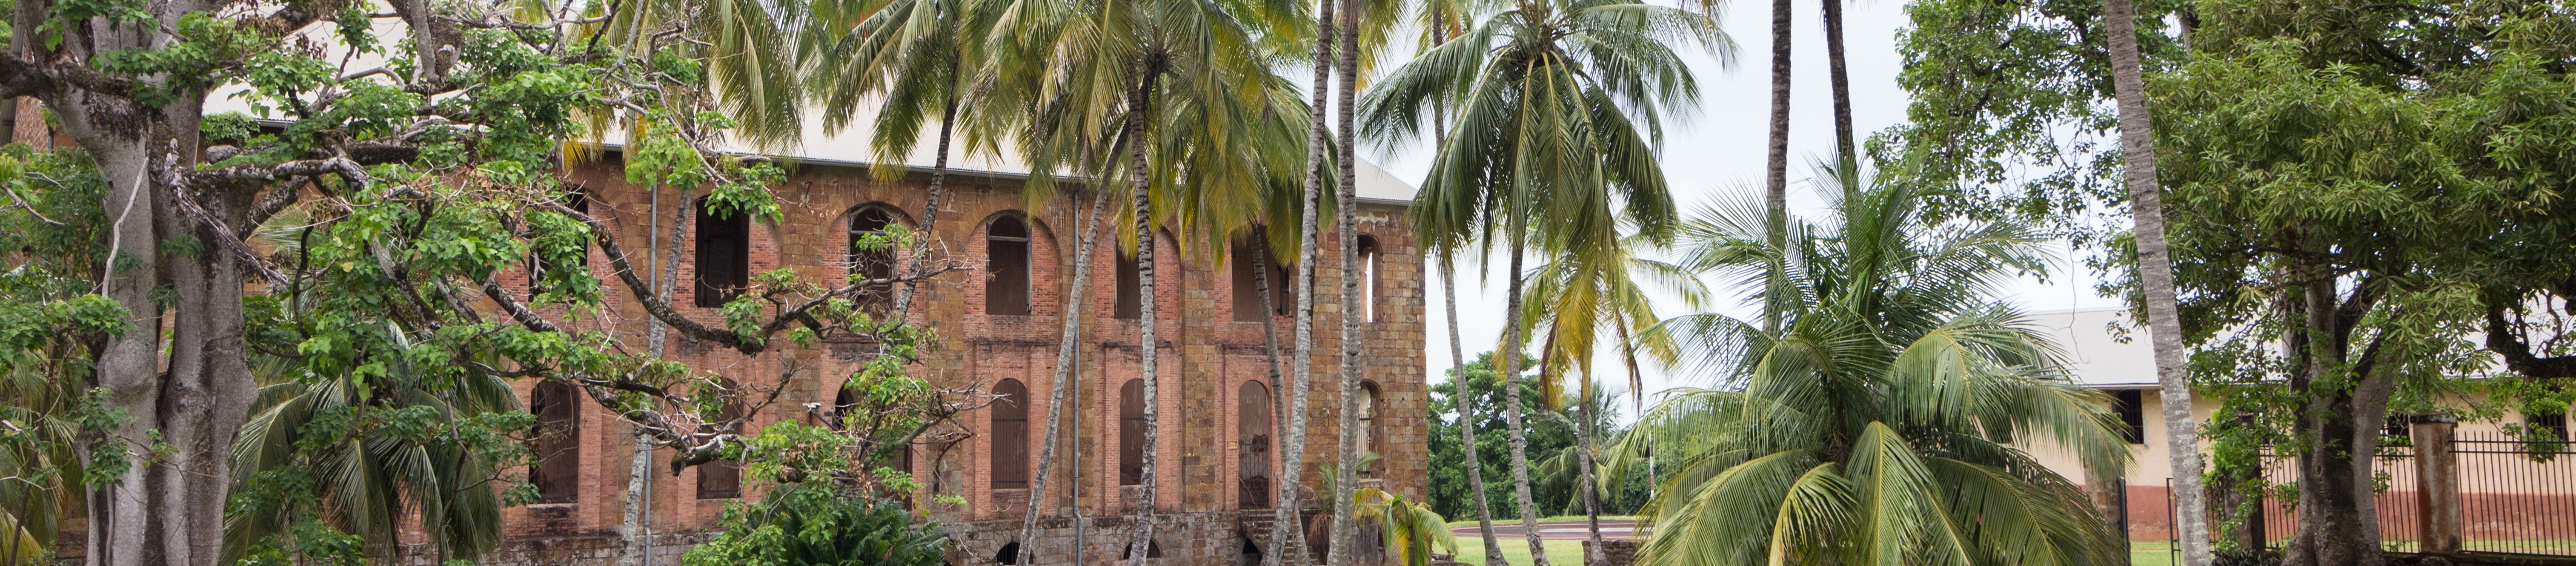 Penal Colony, French Guiana